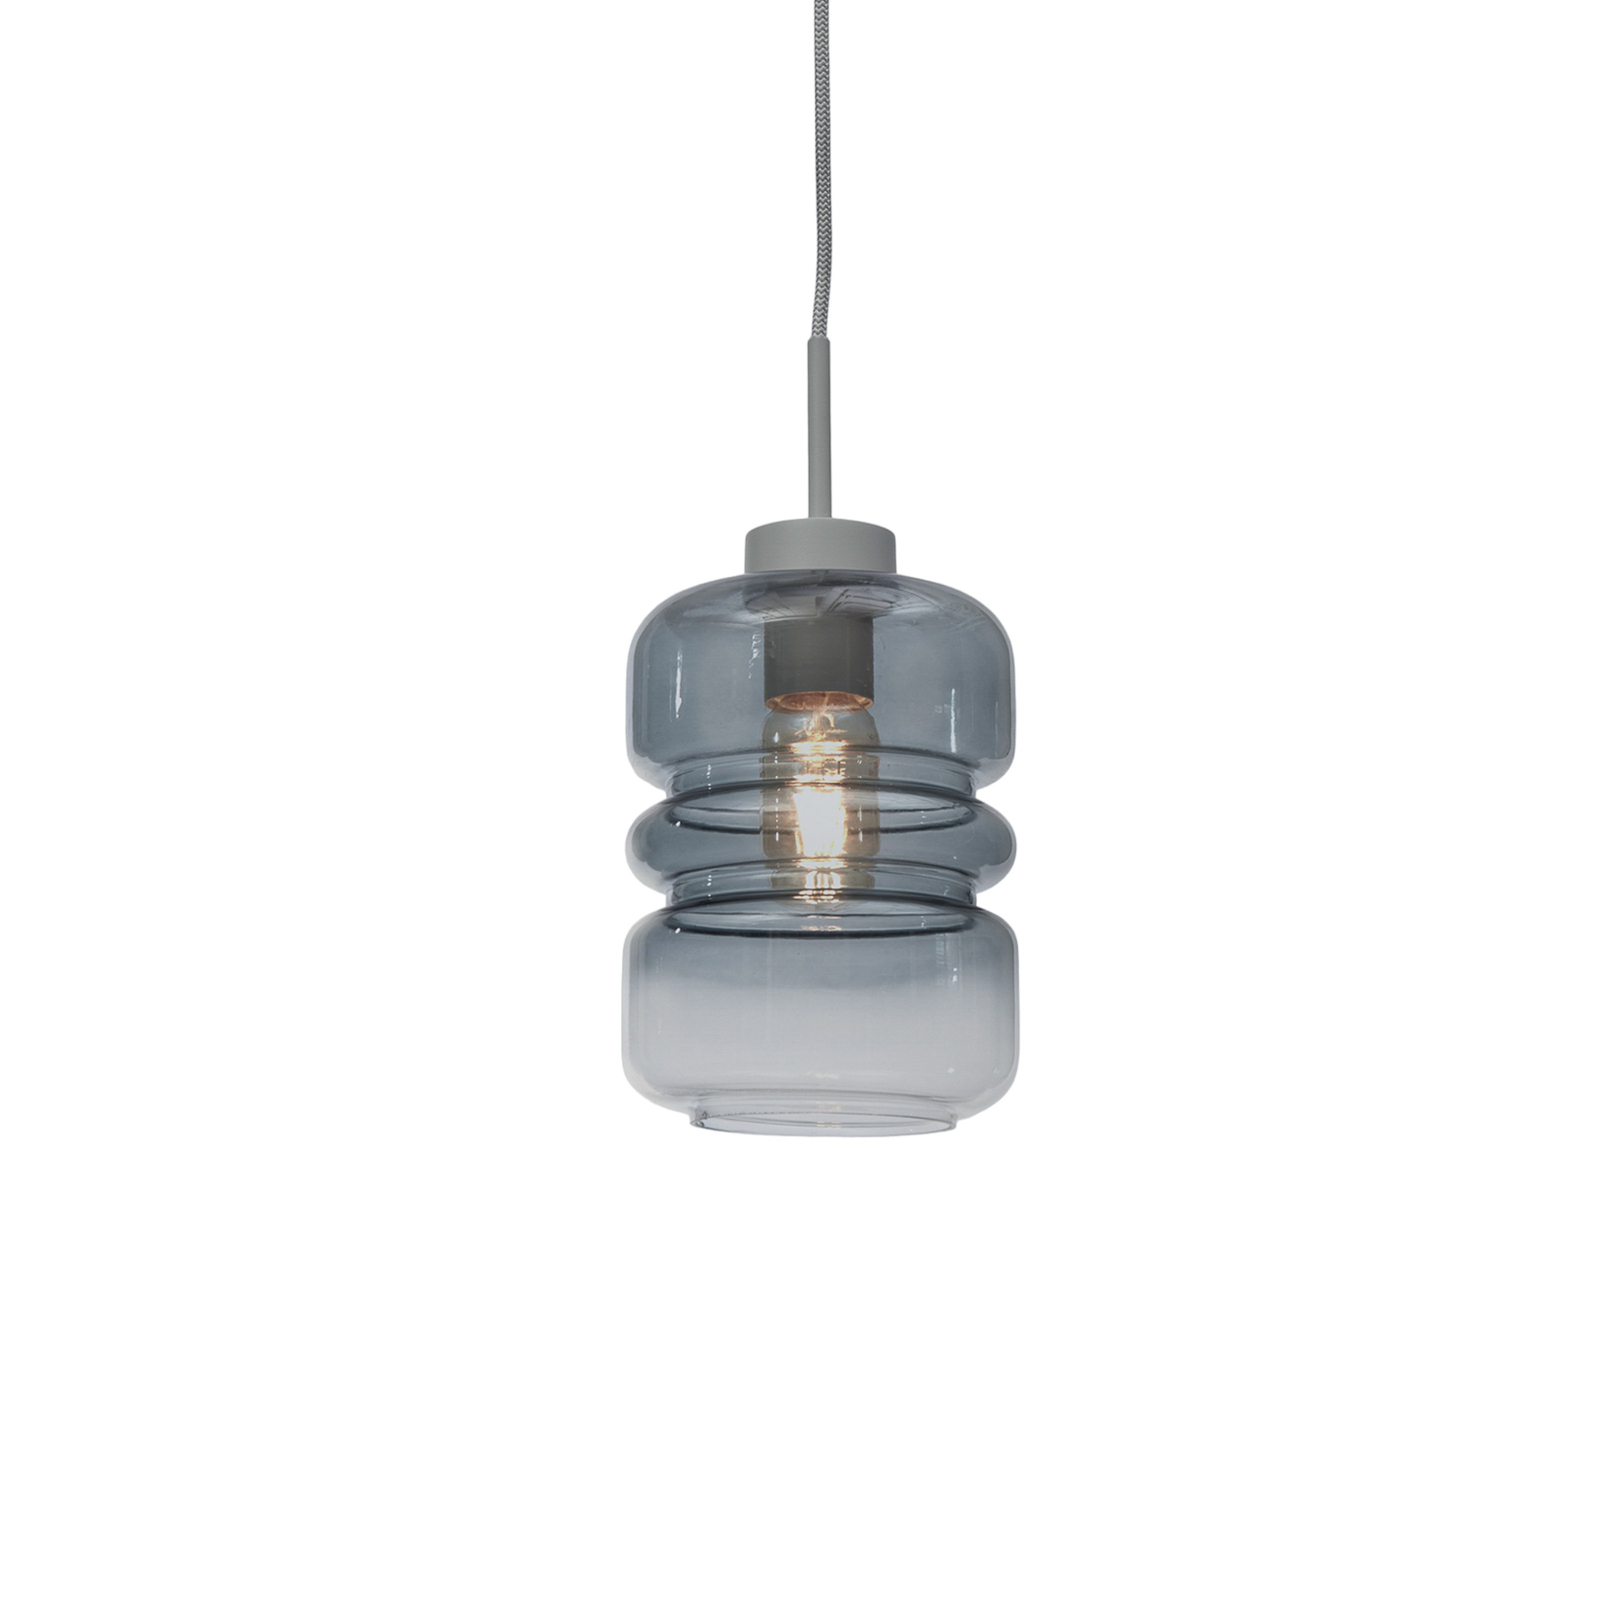 Het gaat om RoMi hanglamp Verona, lichtgrijs, Ø 15 cm